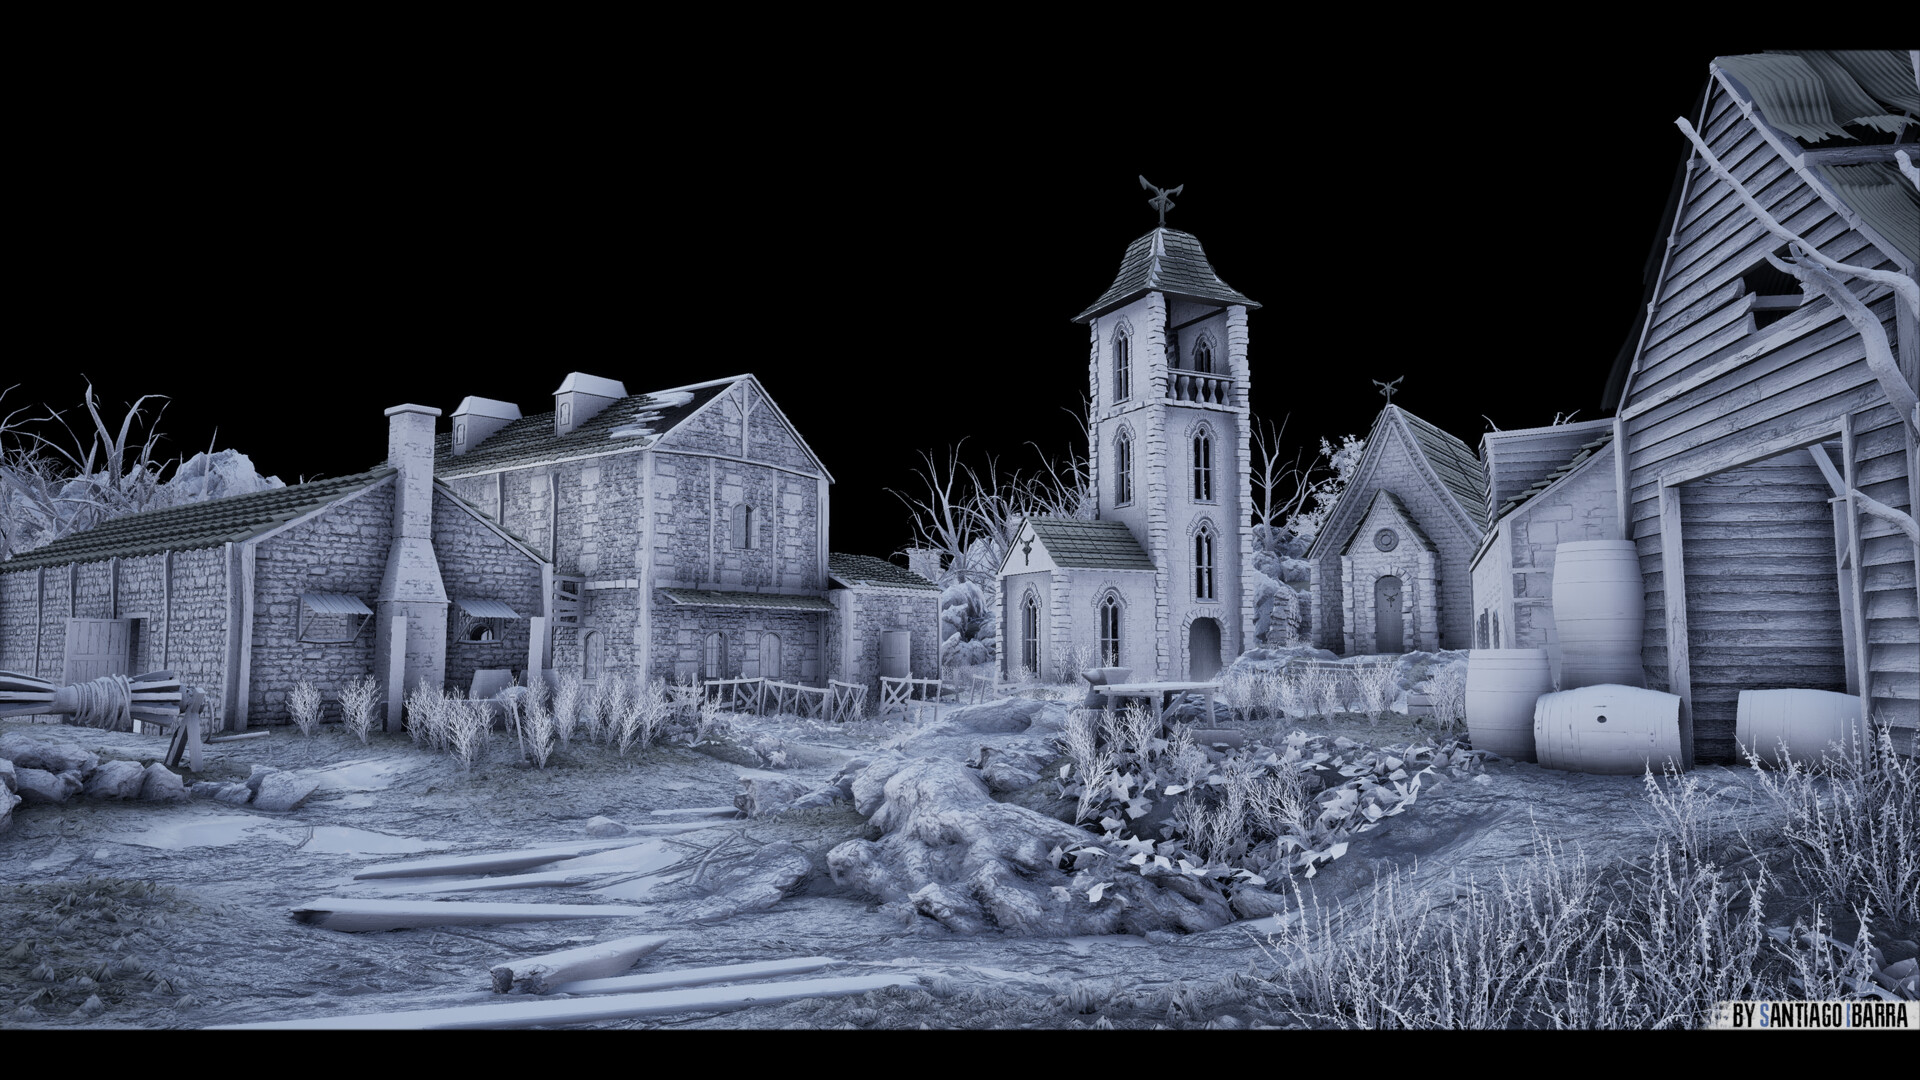 ArtStation - Resident Evil 4 Village